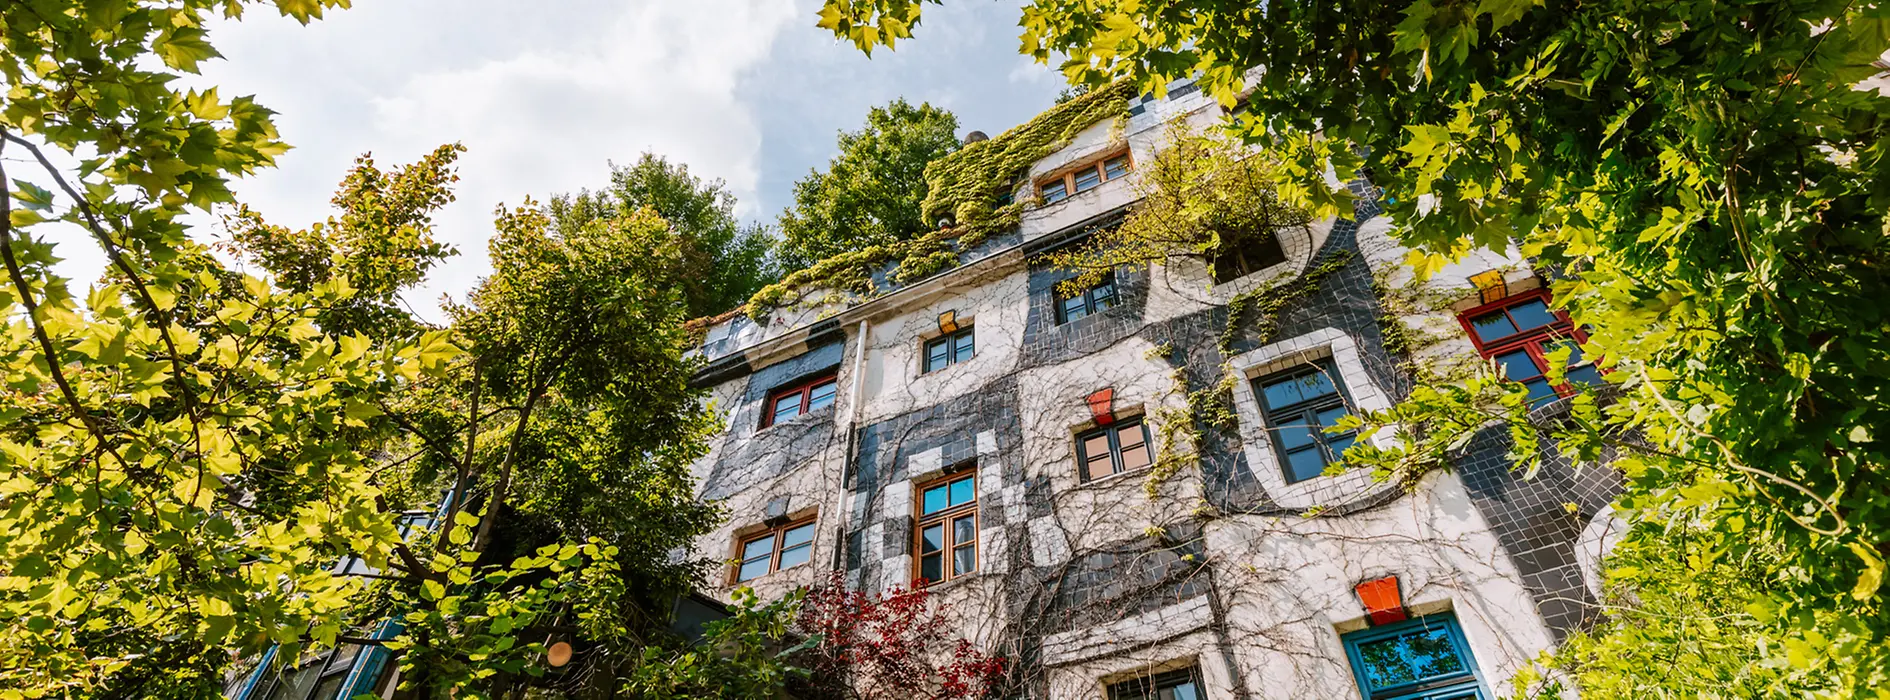 Façade végétalisée d’un musée conçu par l’architecte Hundertwasser